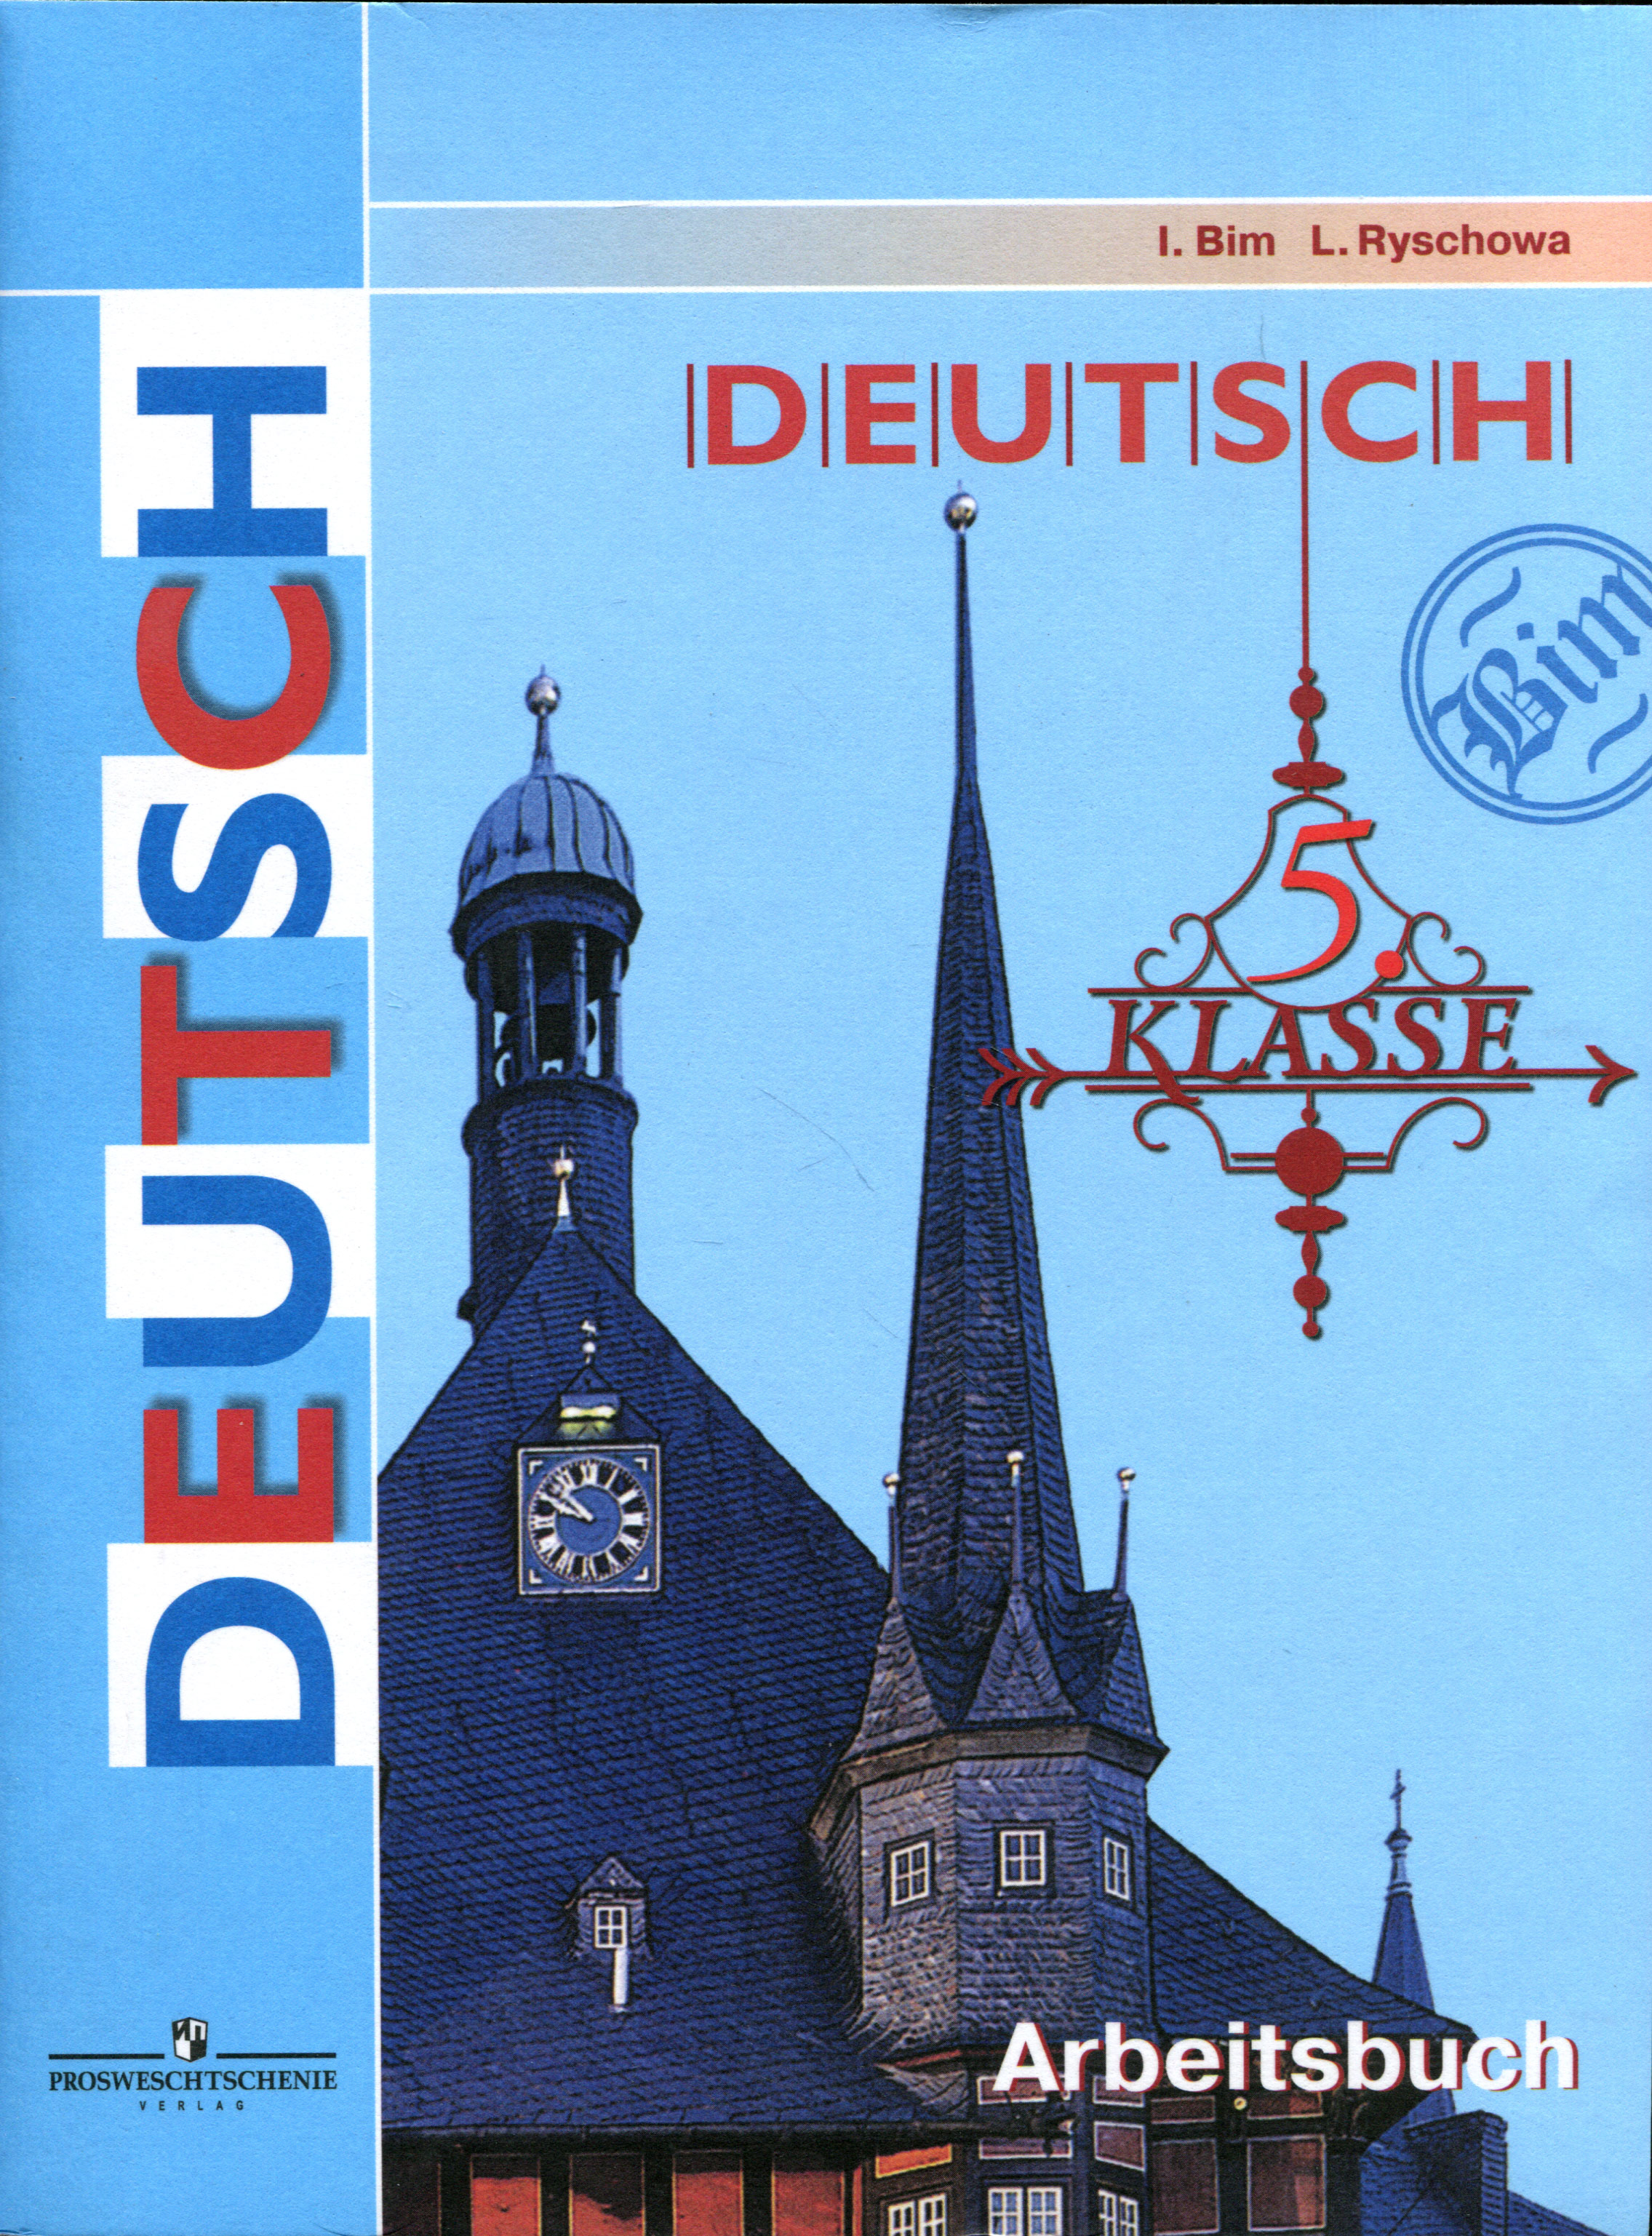 Deutsch: 5 klasse: Arbeitsbuch / Немецкий язык. 5 класс. развивается размеренно двигаясь